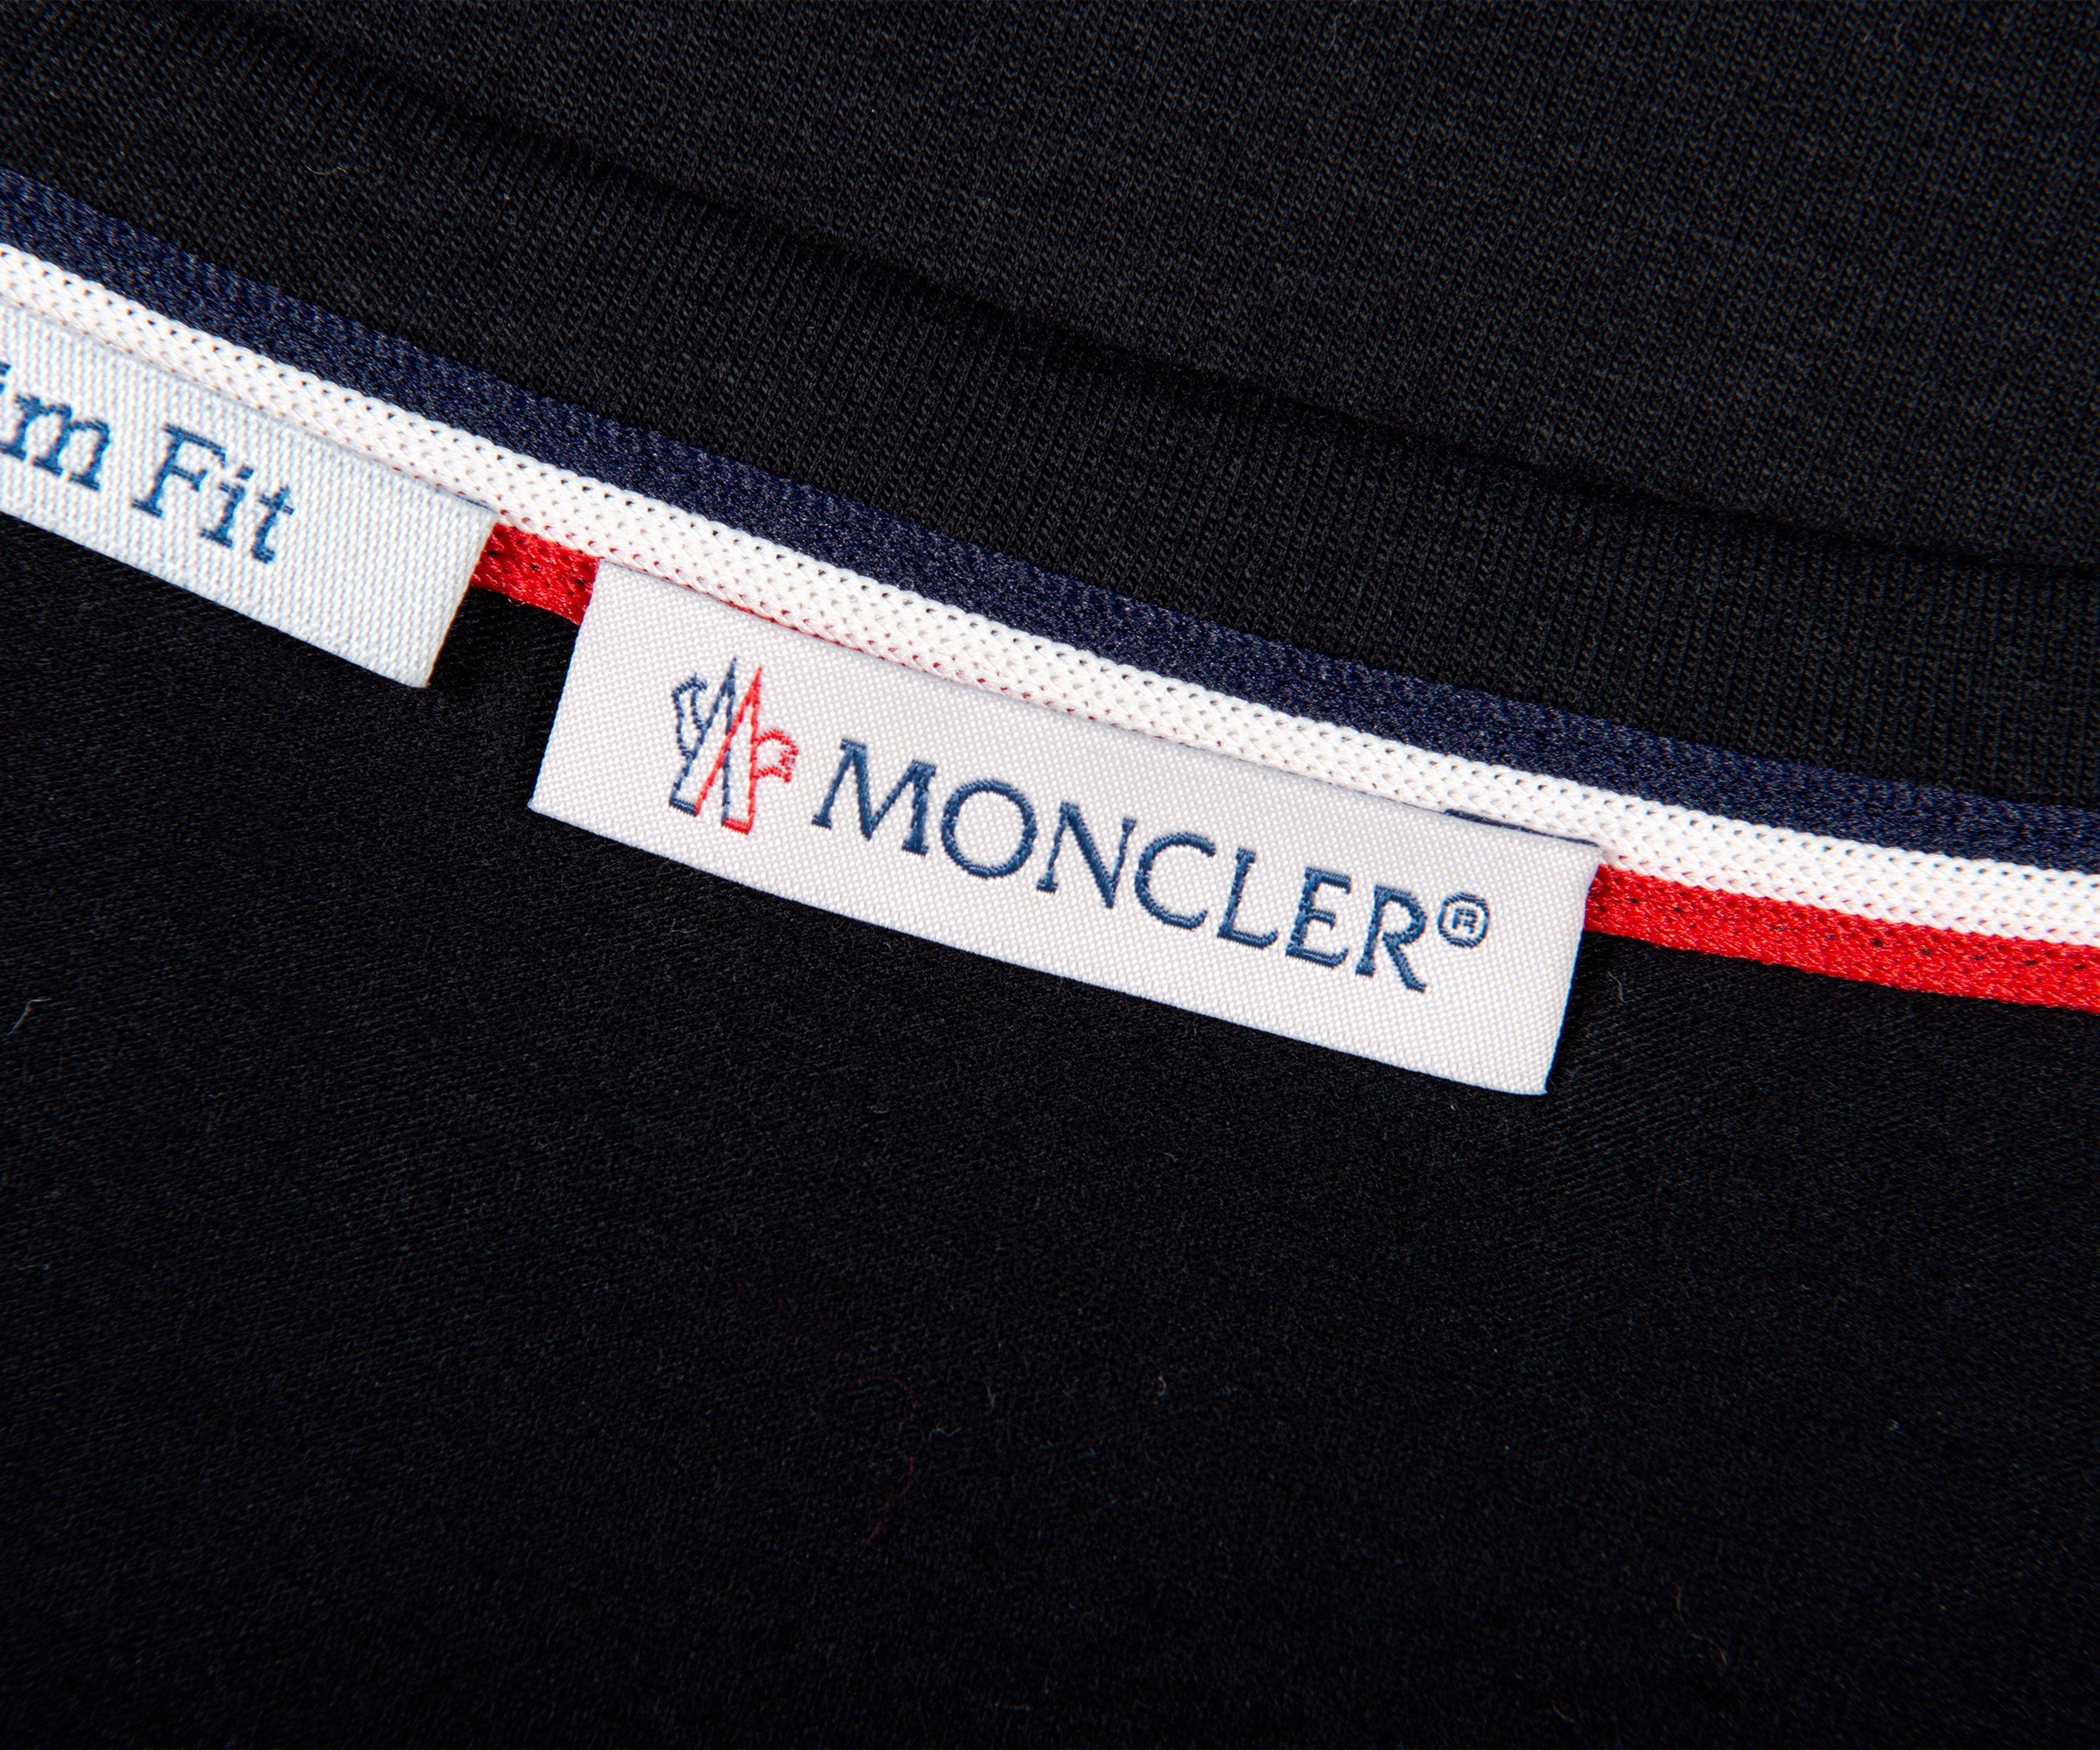 Moncler 'Arm Logo' Slim Fit Classic T-Shirt Black